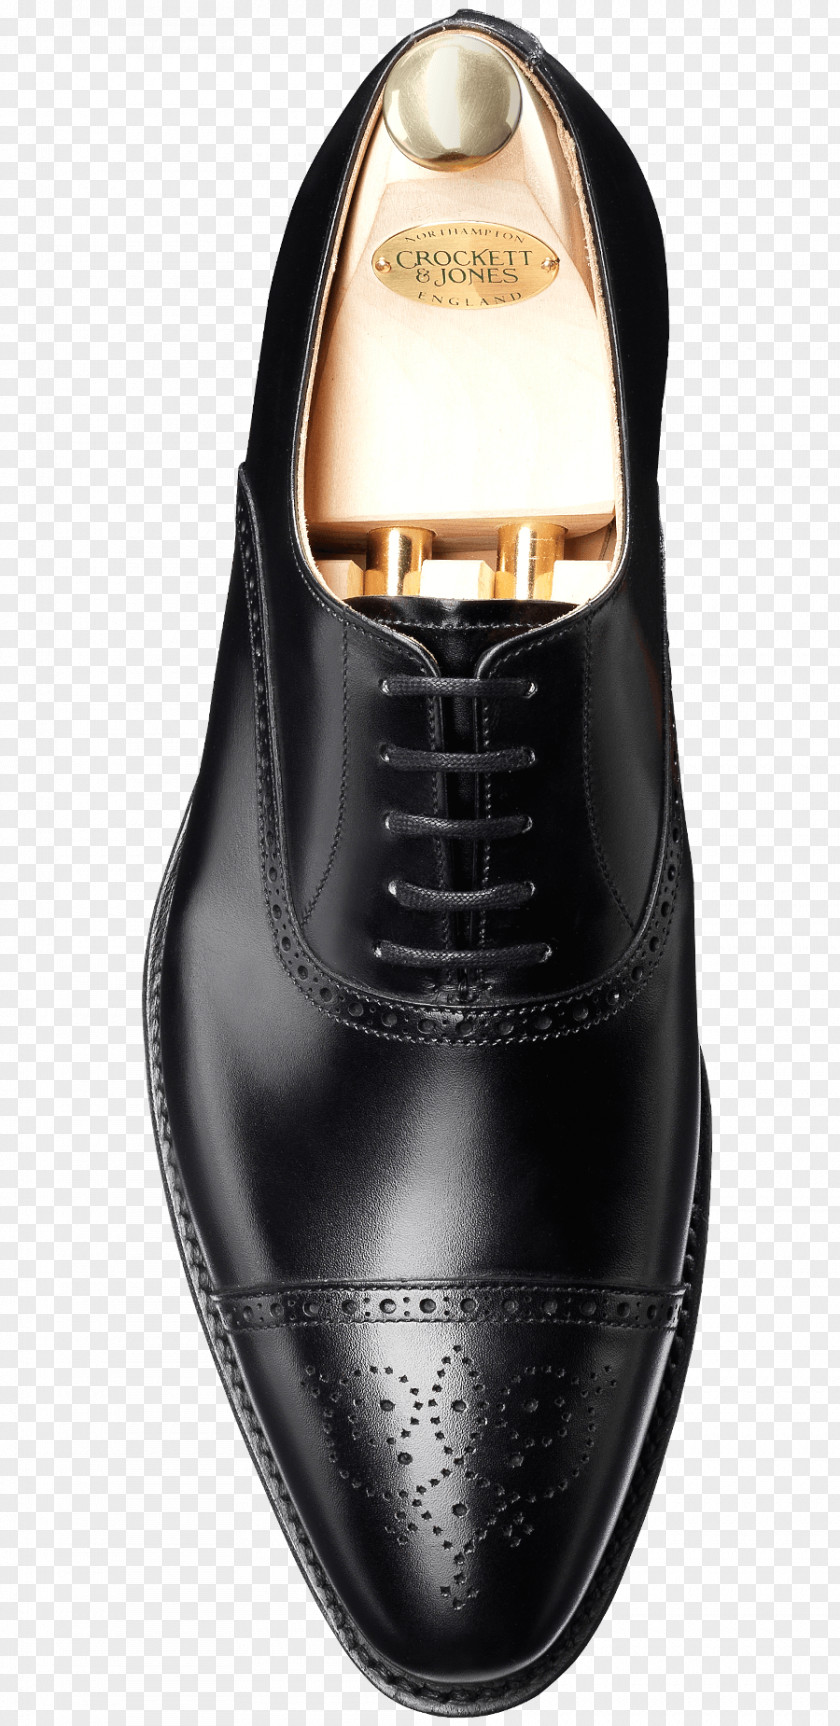 Goodyear Welt Oxford Shoe Leather Calfskin Crockett & Jones PNG